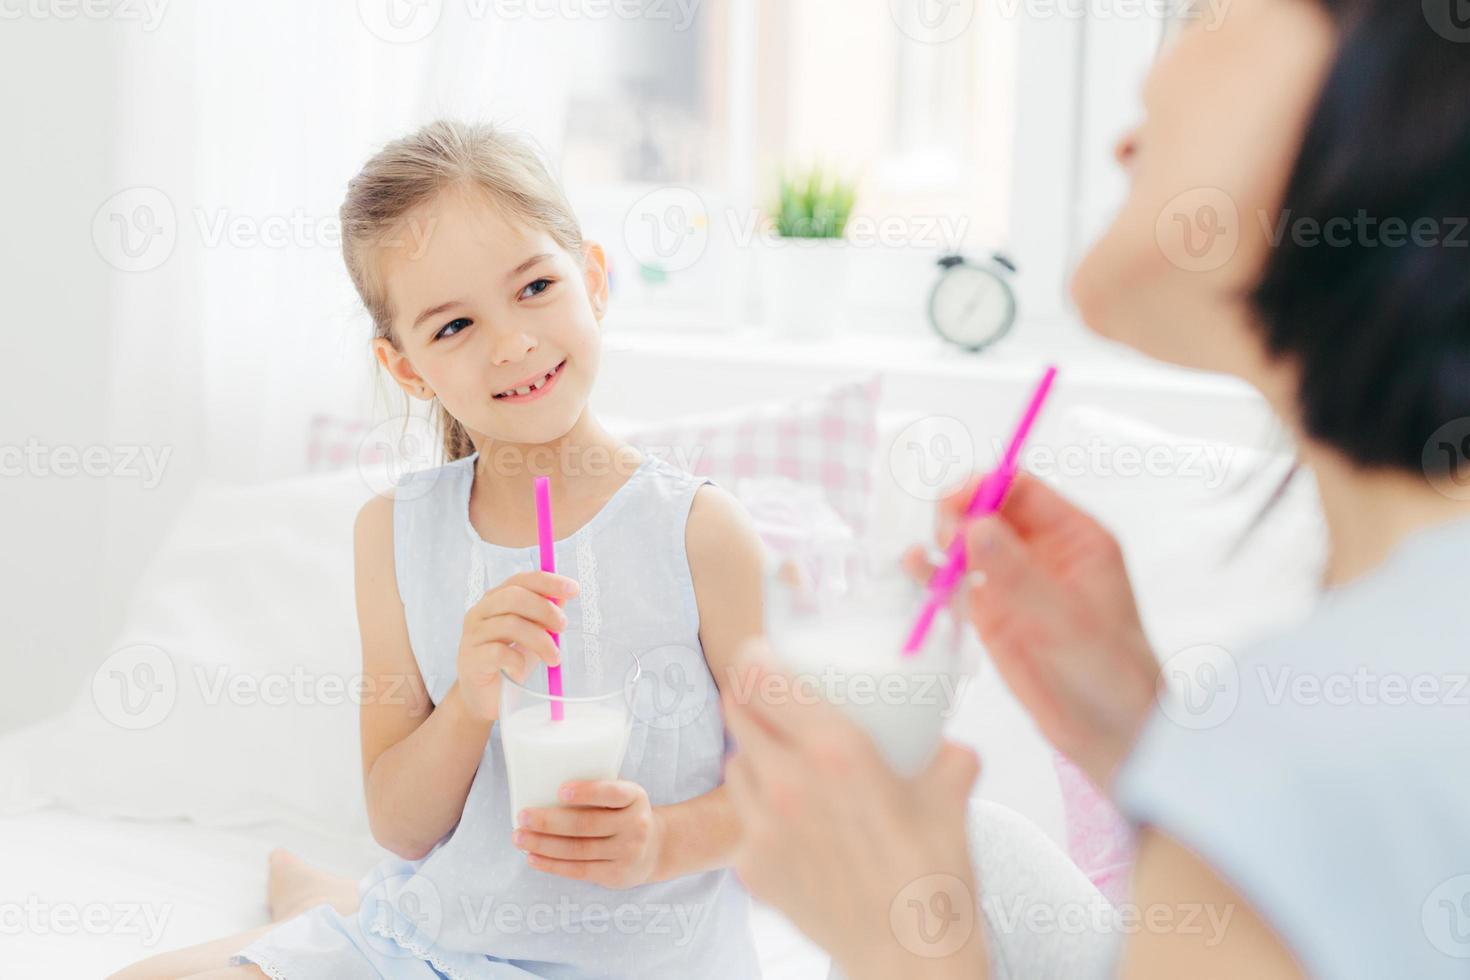 bijgesneden opname van mooi klein vrouwelijk kind drinkt smakelijke milkshake samen met haar moeder, geniet van goedemorgen en rustige huiselijke sfeer, heeft een gelukkige blik. mensen, ontbijt en beddengoed foto